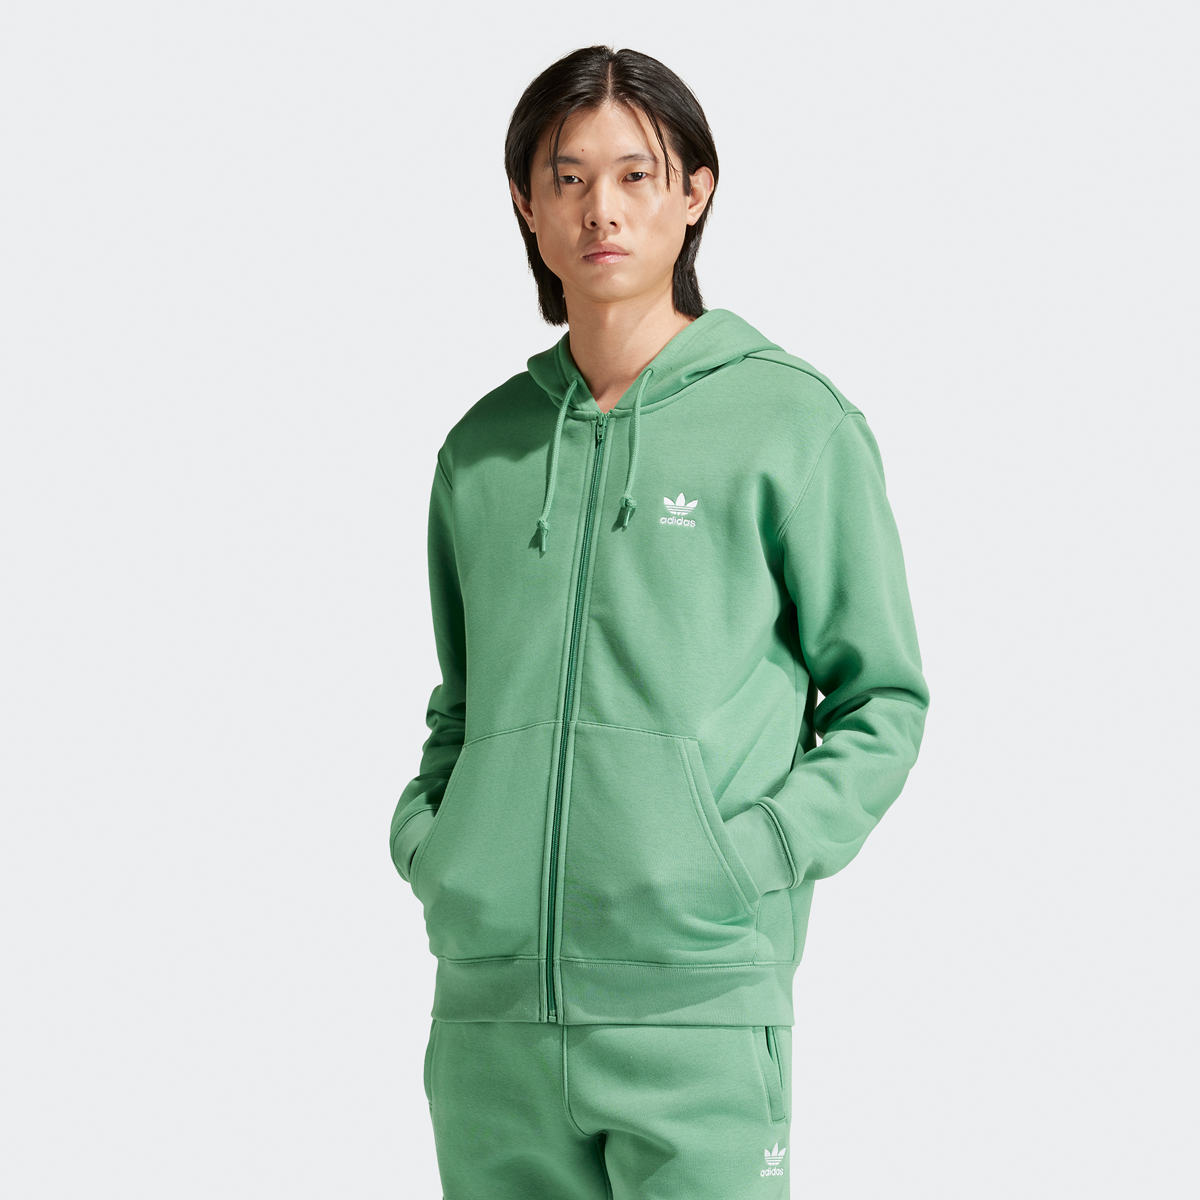 Adidas Originals Essential Full Zip Hoodie Hooded vesten Heren preloved green white maat: XL beschikbare maaten:S M L XL